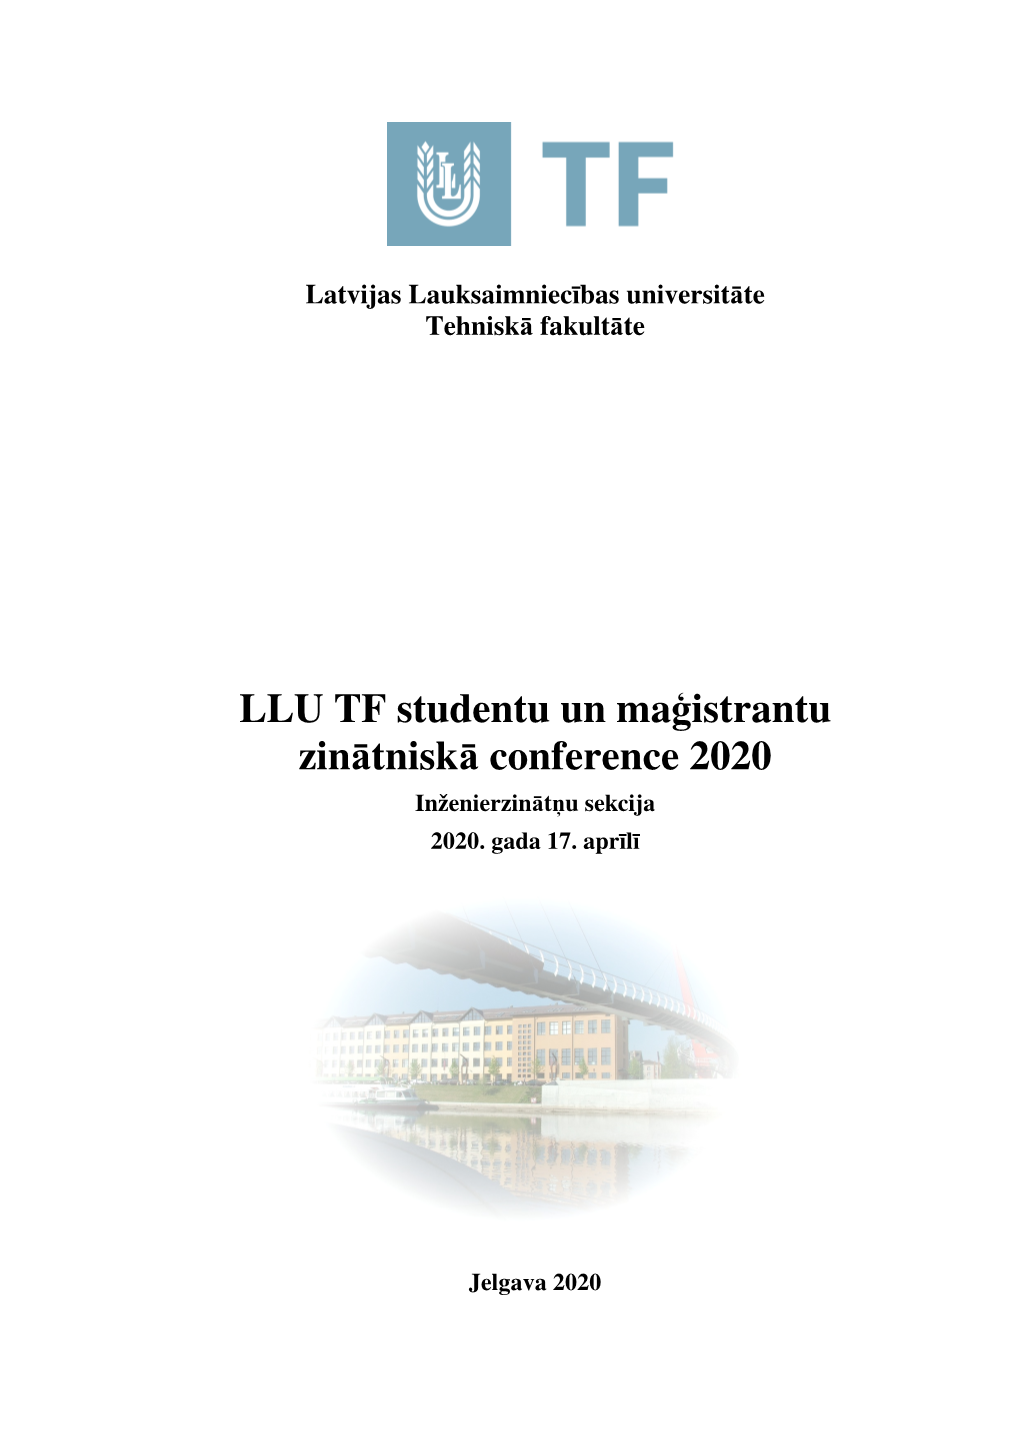 LLU TF Studentu Un Maģistrantu Zinātniskā Conference 2020